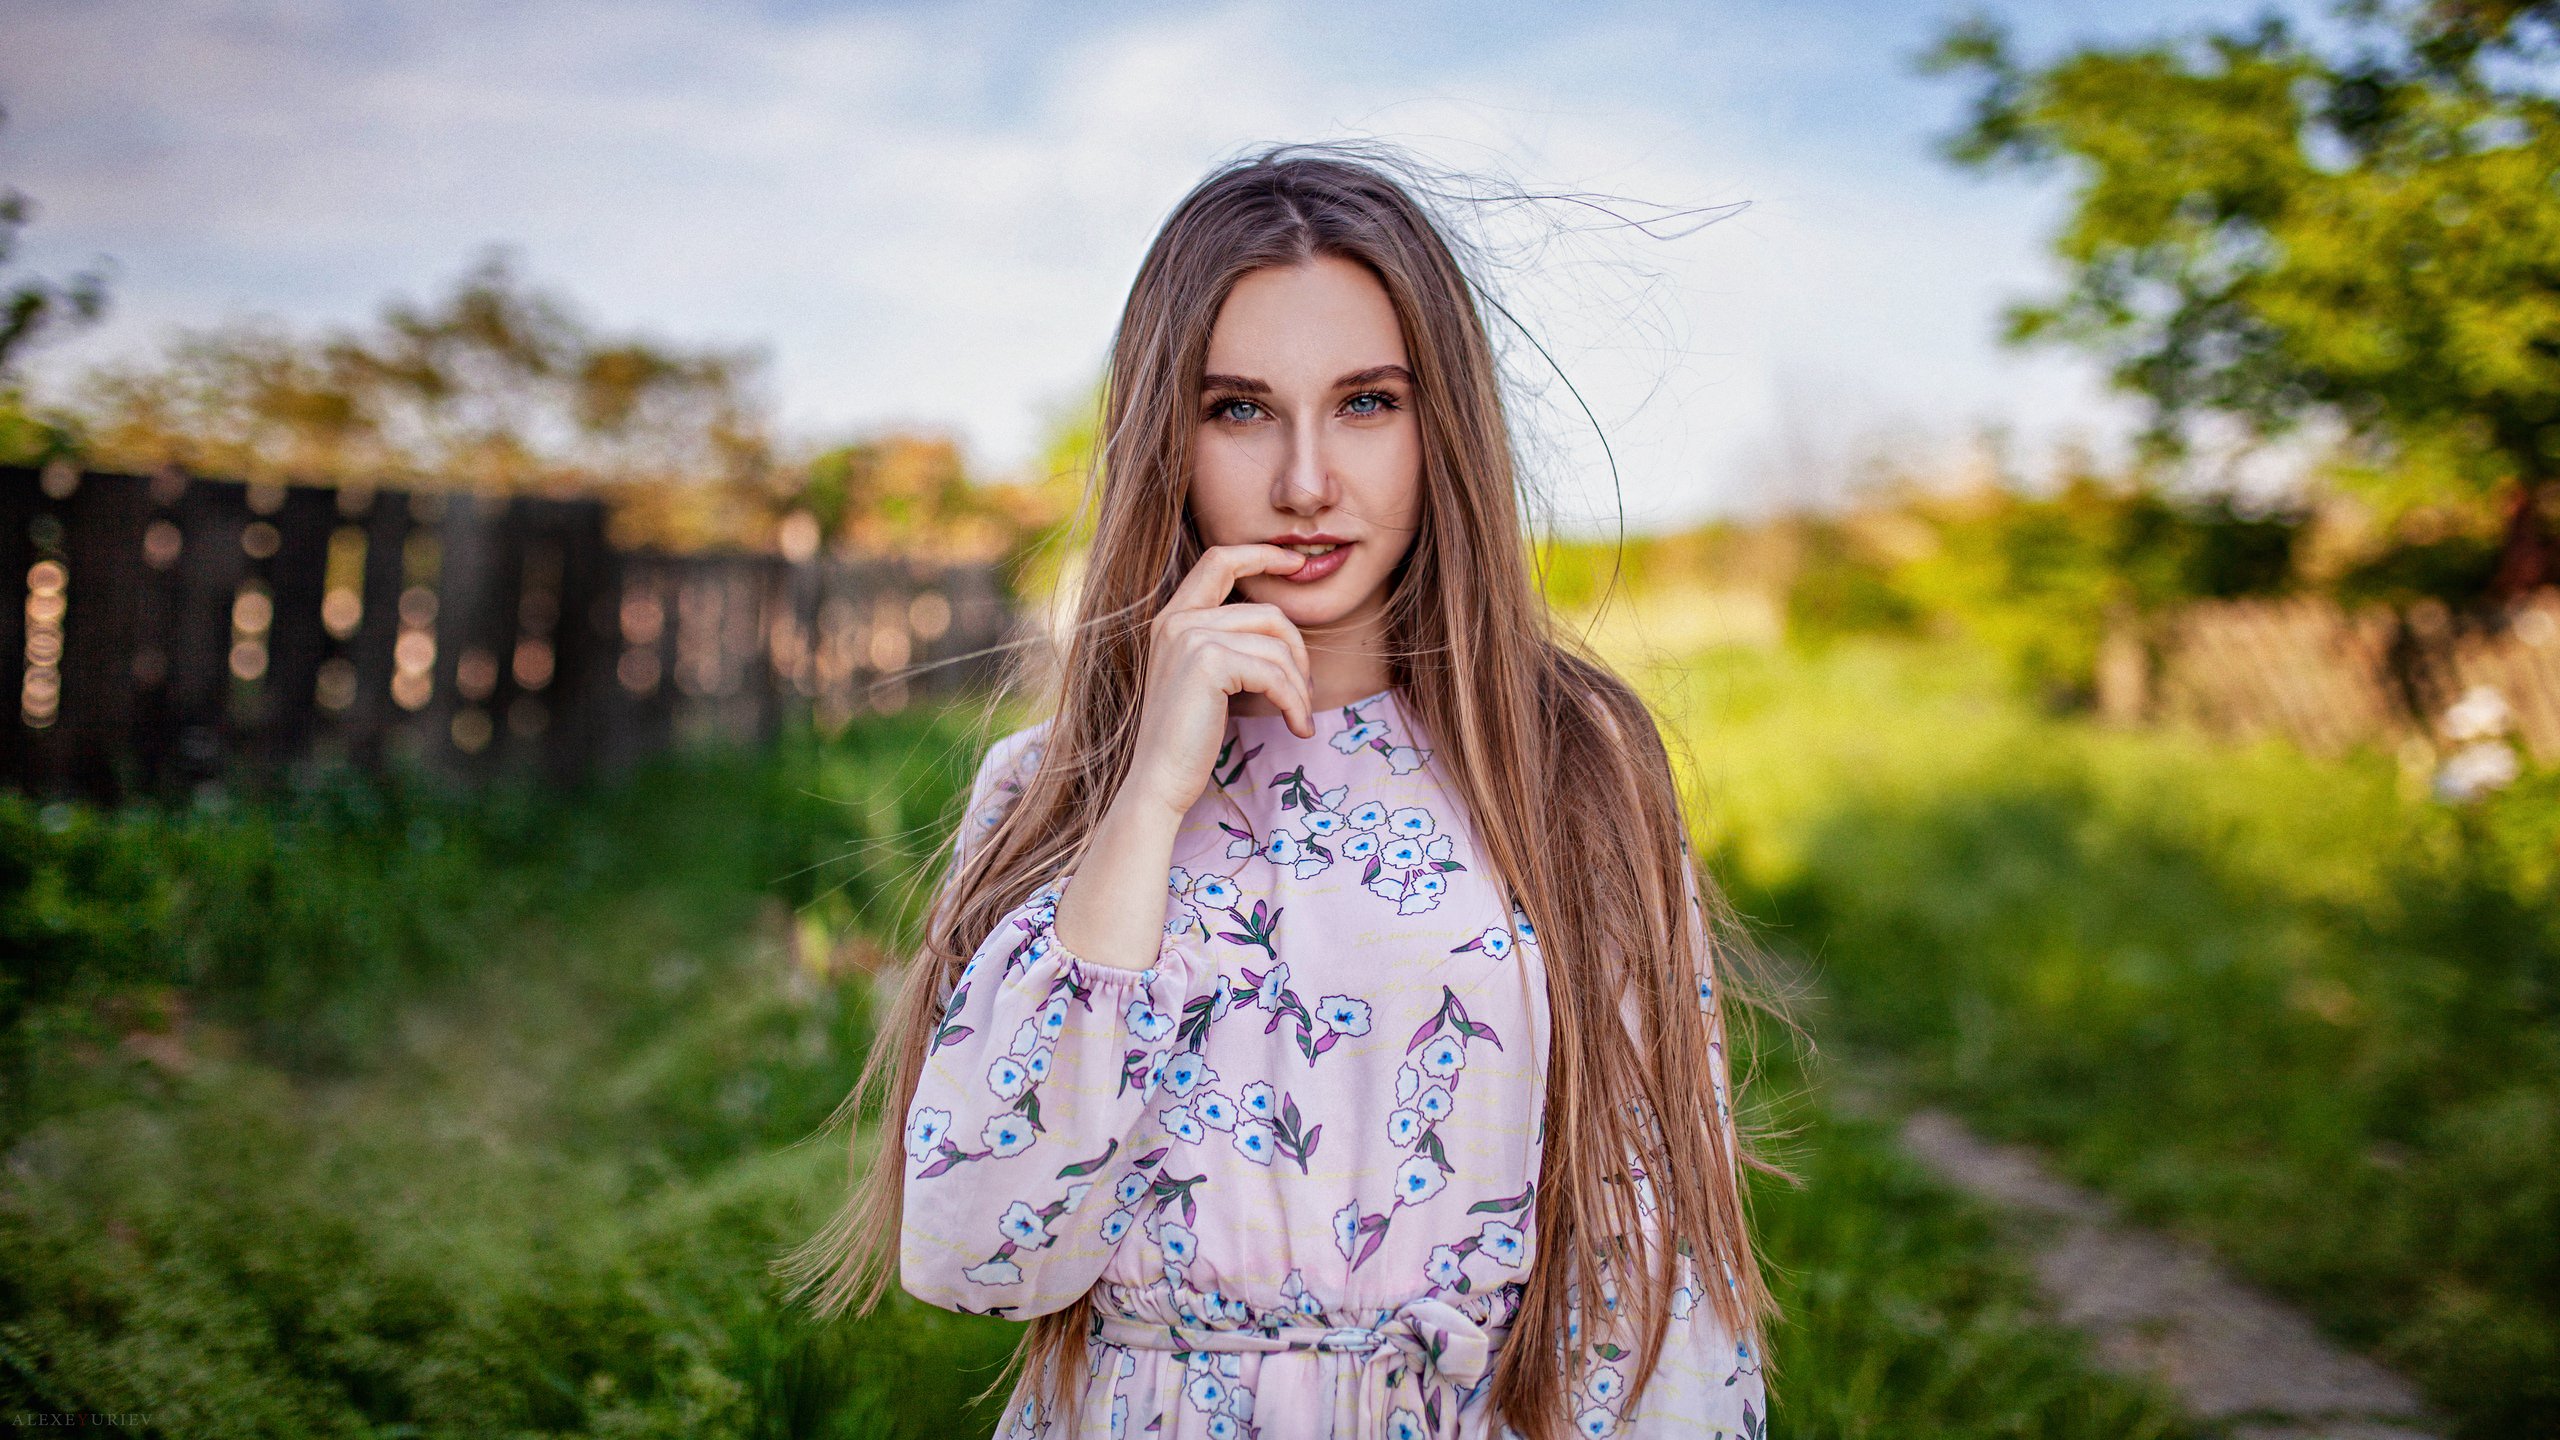 People 2560x1440 women Diana Furmanova dress women outdoors long hair grass portrait finger on lips blue eyes watermarked Alexey Yuryev